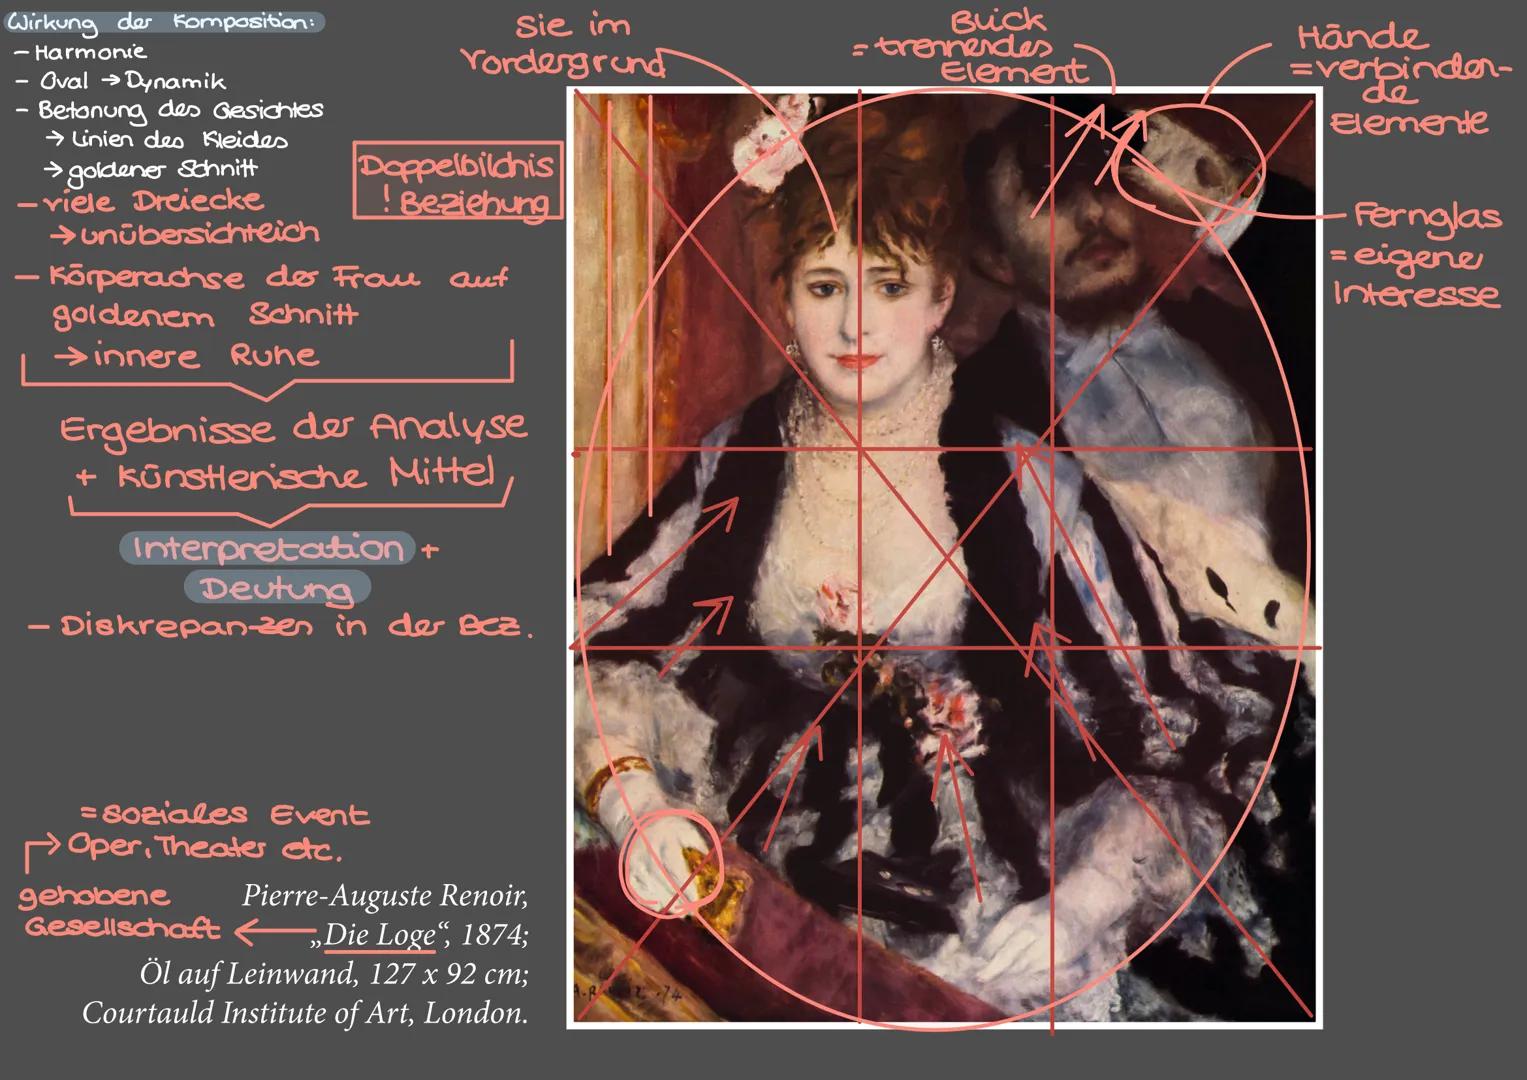 Wirkung der Komposition:
- Harmonie
Oval → Dynamik
• Betonung des Gesichtes
→ Linien des Kleides
→goldener Schnitt
-viele Dreiecke
unübersic